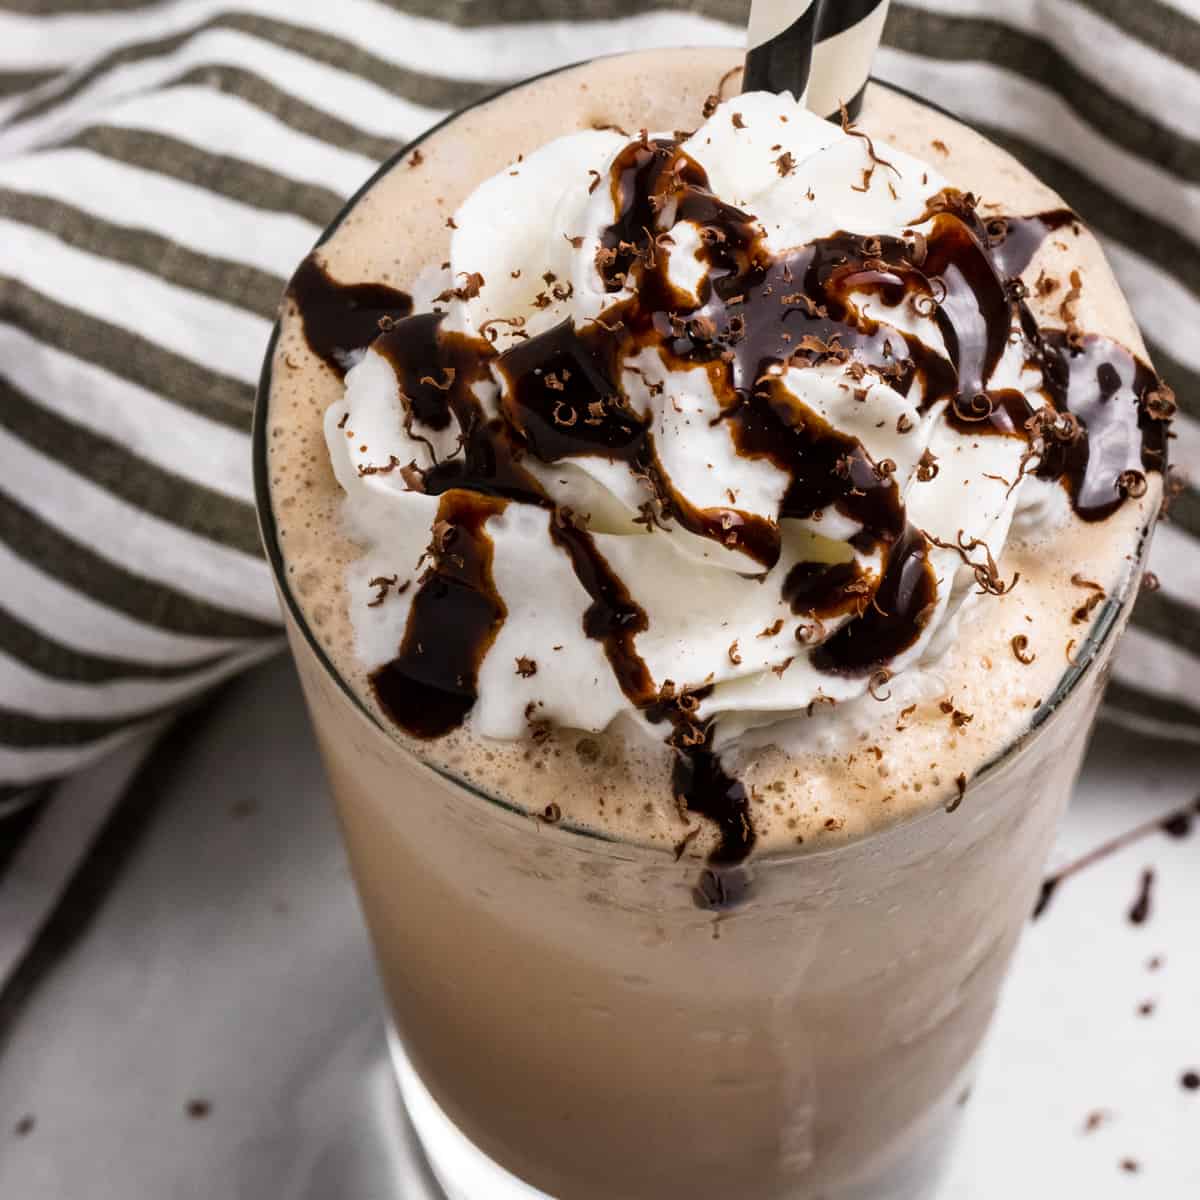 Coffee ice cream frappe recipe (homemade frappuccino)